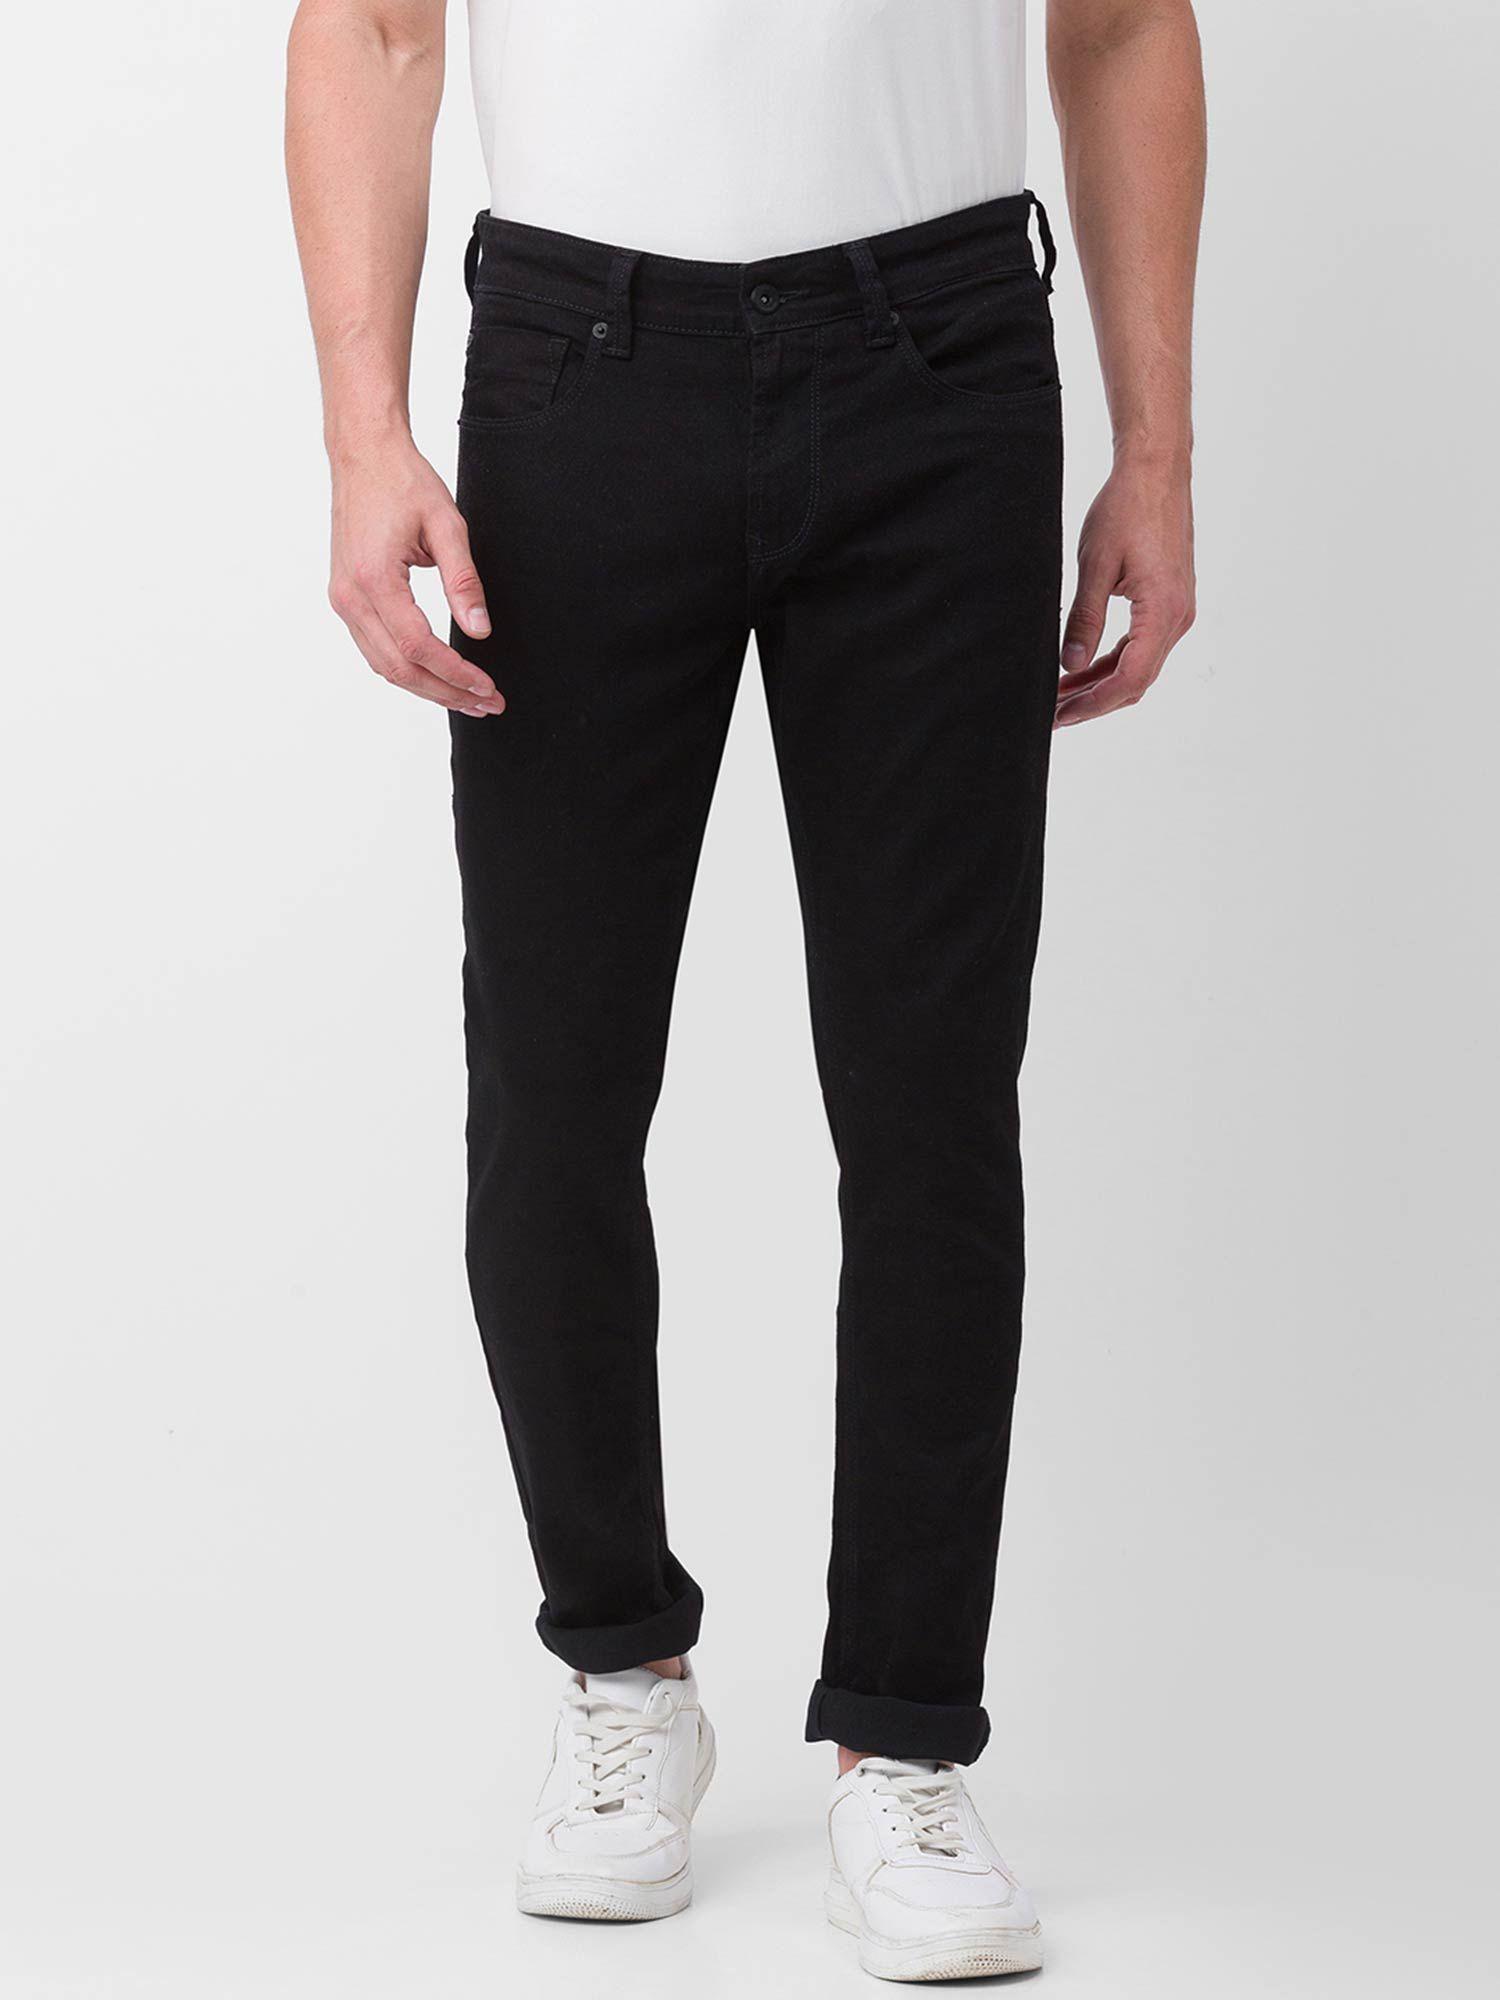 black-cotton-super-slim-fit-tapered-length-jeans-for-men-(super-skinny)